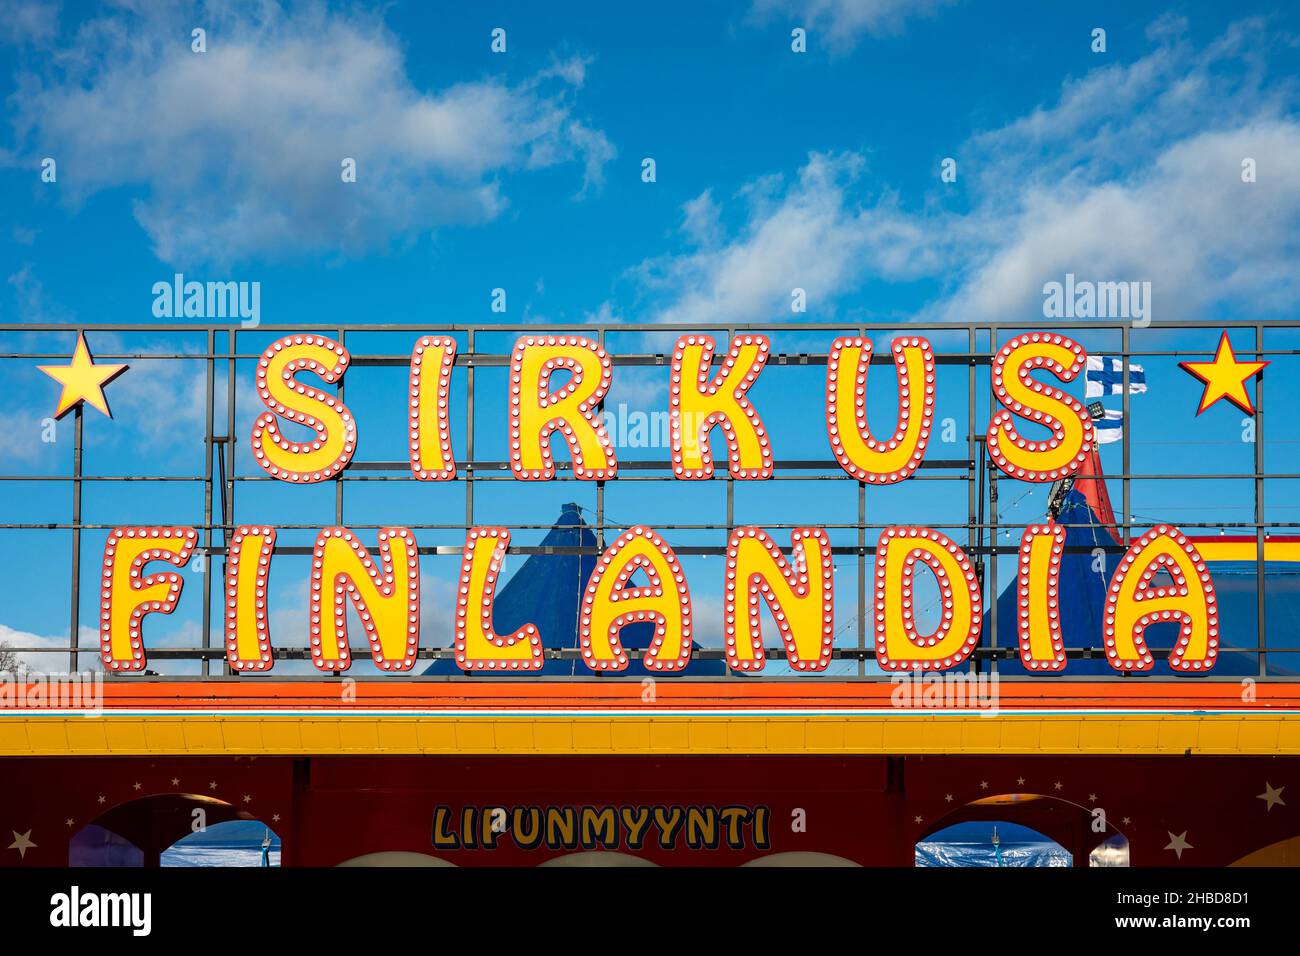 Sirkus Finlandia neon lights Stock Photo